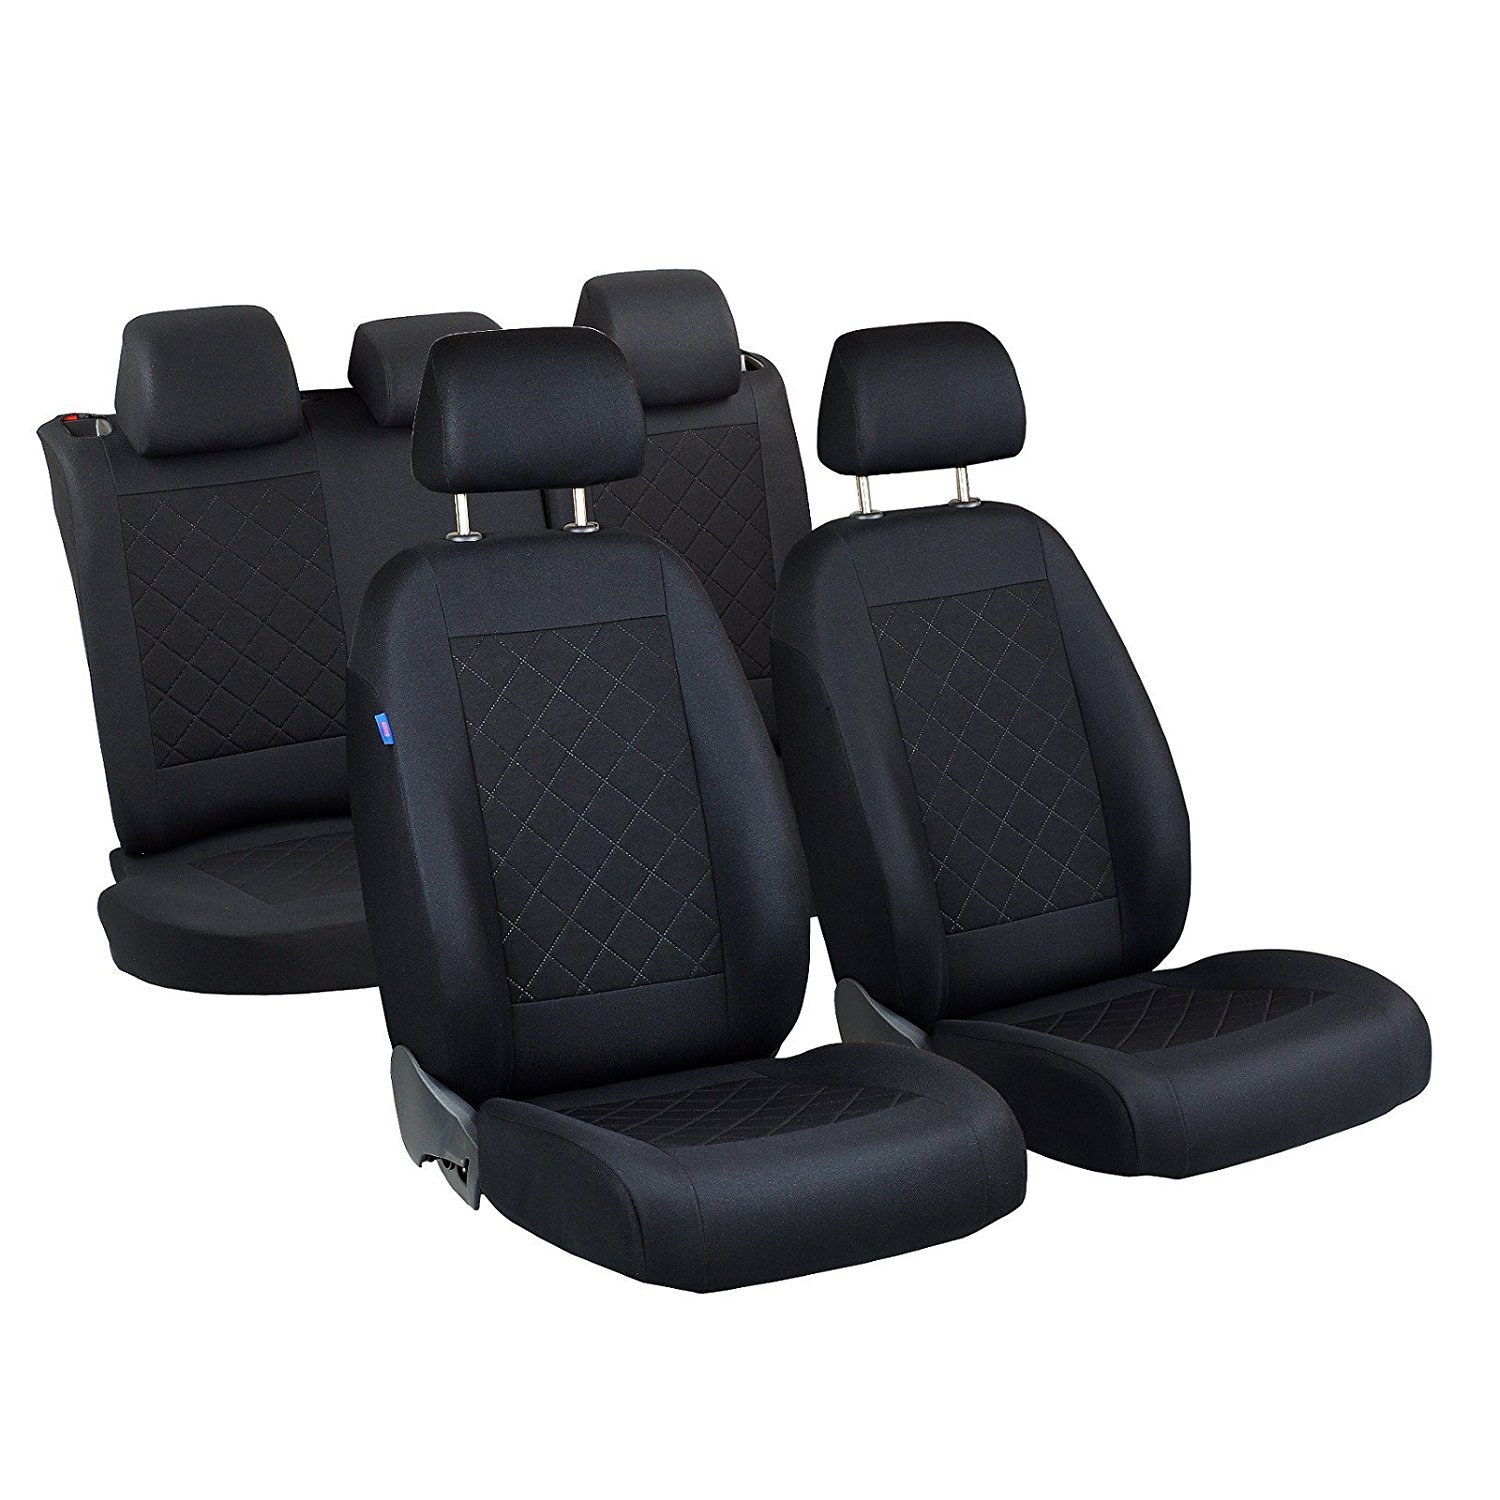 Terios Sitzbezüge - 1 Set - Farbe Premium Schwarz gepresstes Karomuster